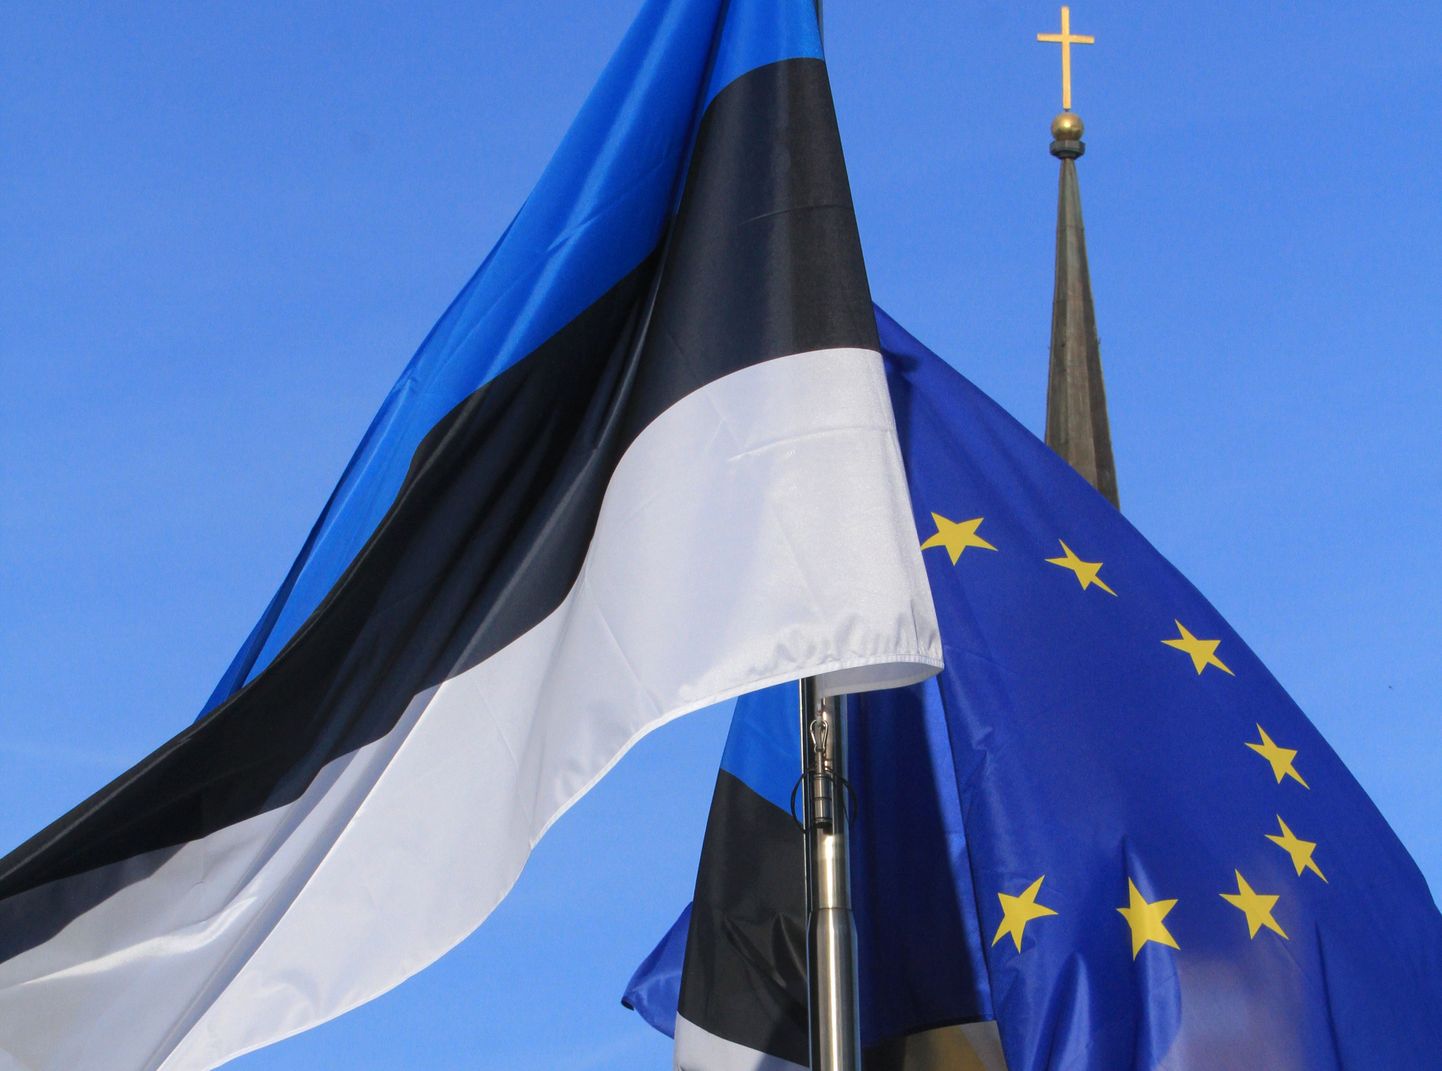 Eesti ja Euroopa Liidu lipp Tallinnas. Eesti oli Euroopa Liidu nõukogu eesistujariik 1. juulist kuni 31. detsembrini 2017